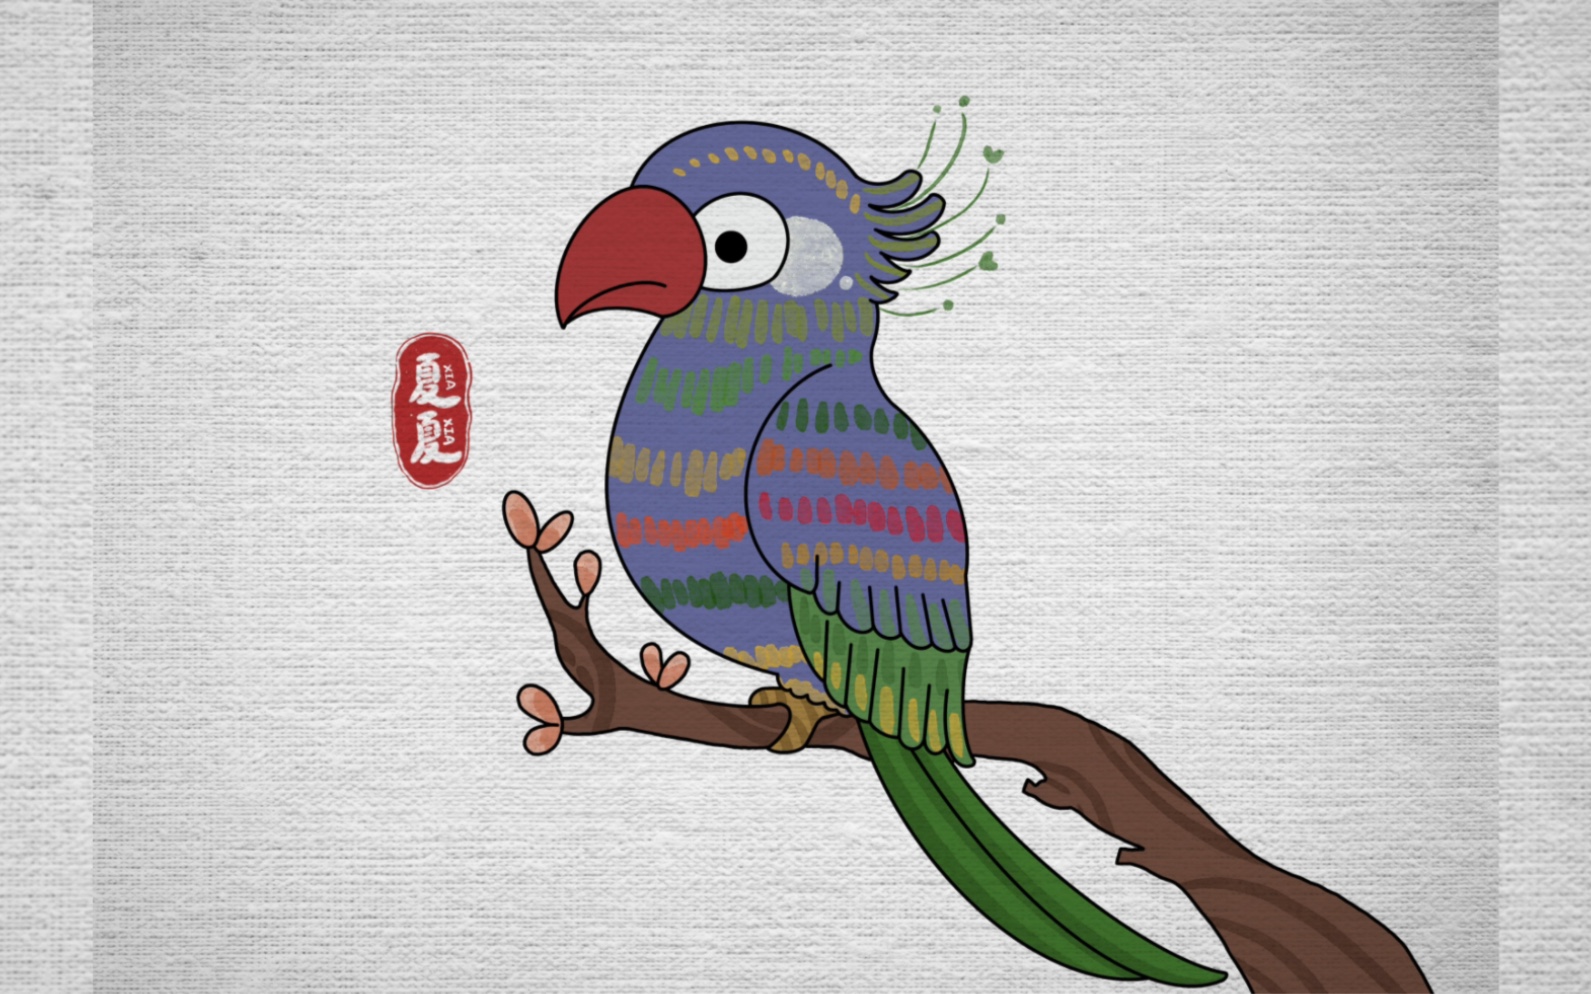 鹦鹉简笔画 可爱图片